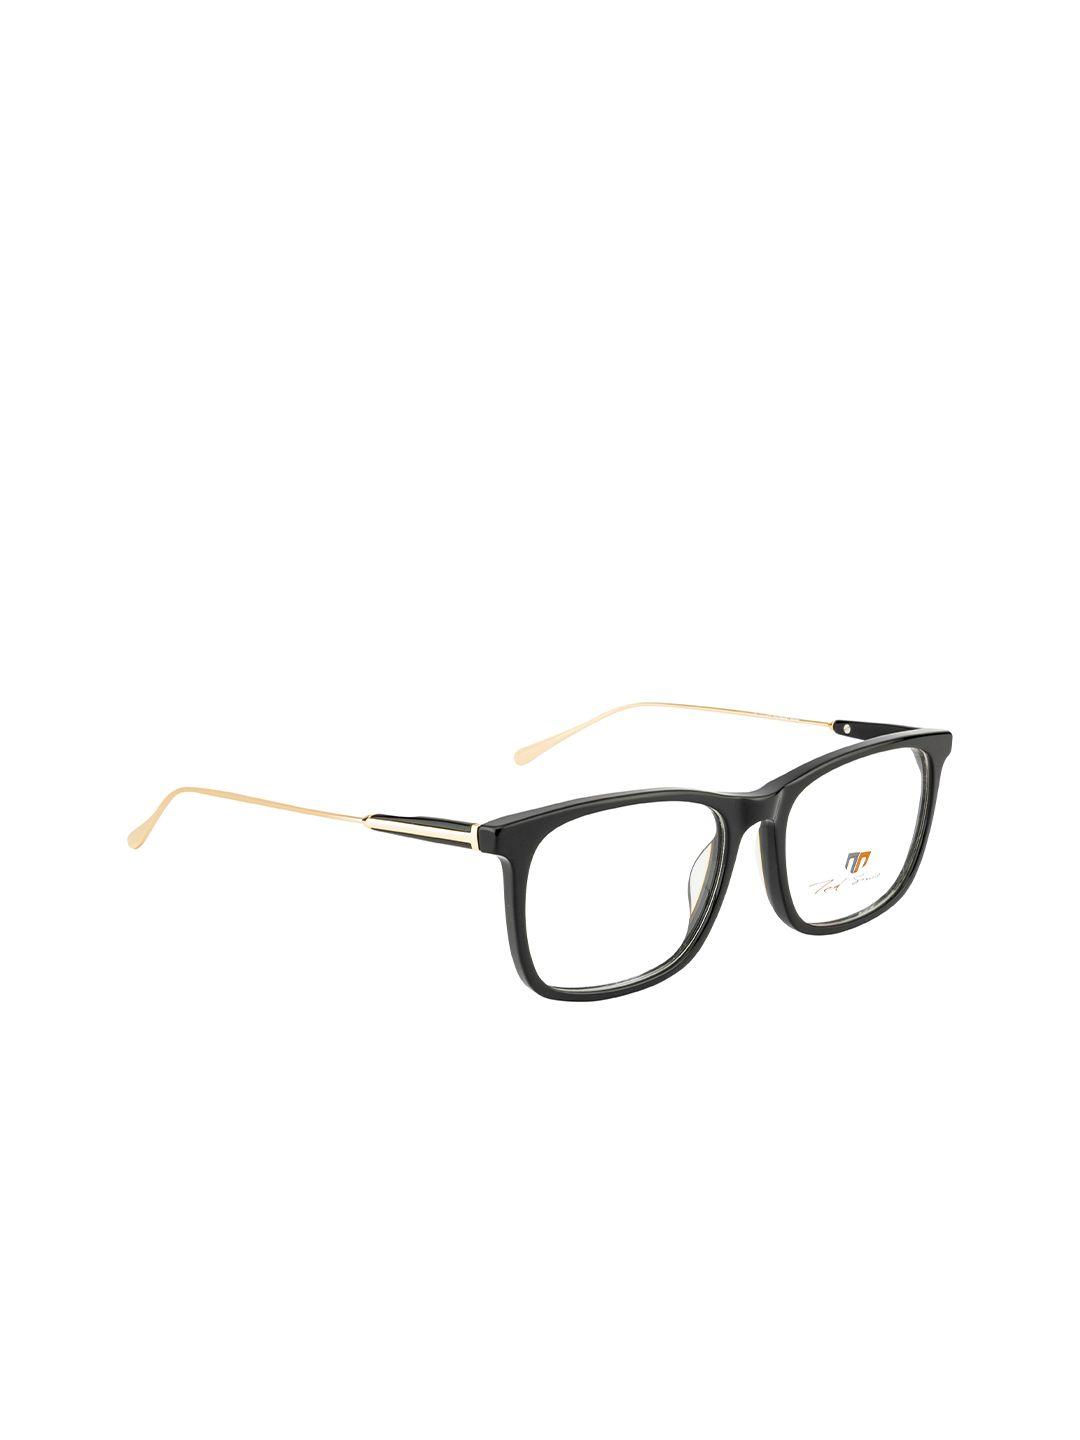 ted smith unisex black & gold-toned full rim rectangle frames eyeglasses